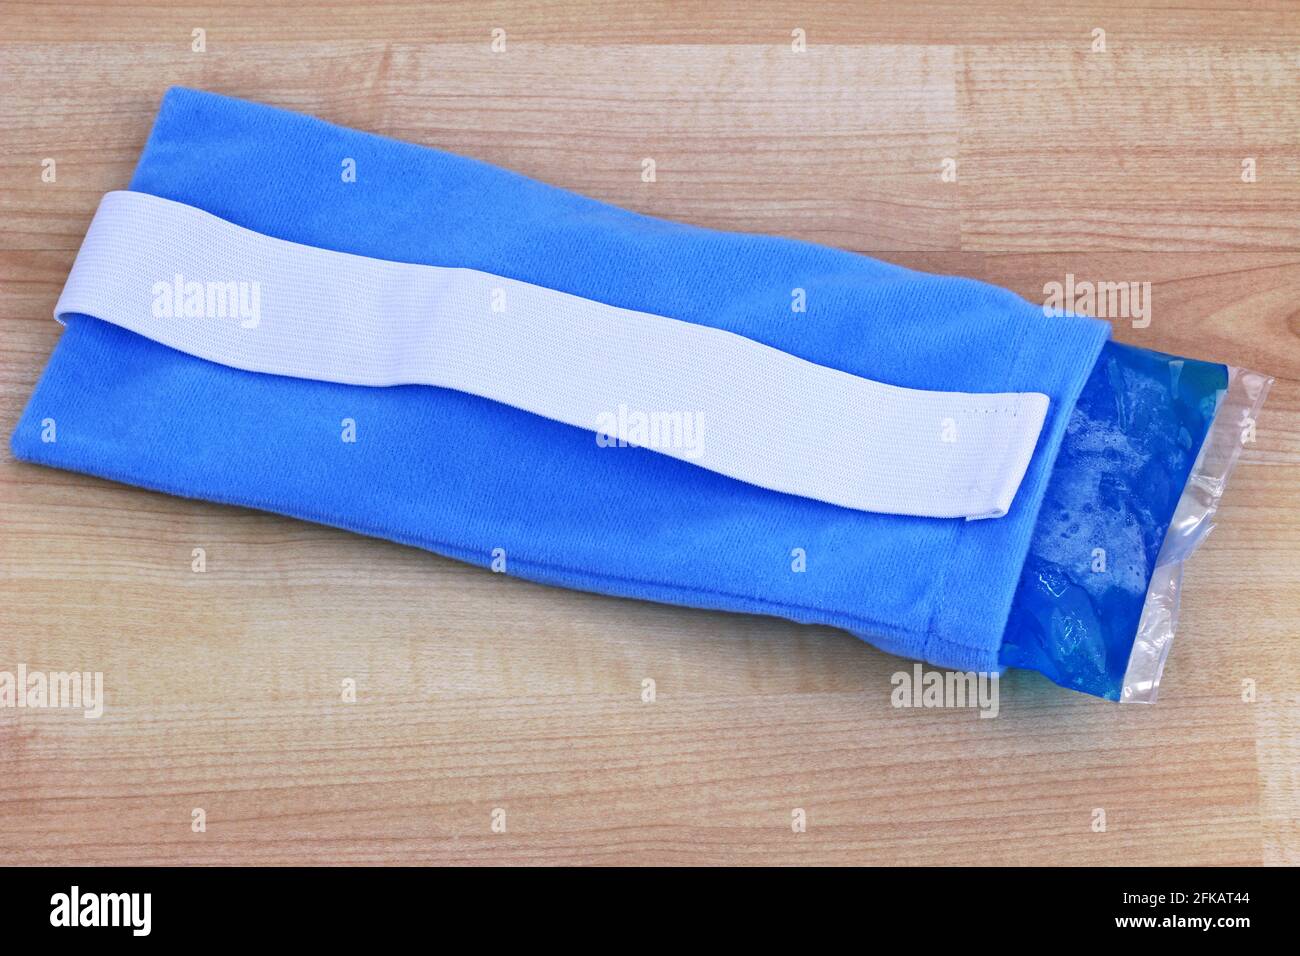 Un paquete frío y caliente de gel suave reutilizable azul para aliviar el dolor dentro de una bolsa de tela Foto de stock